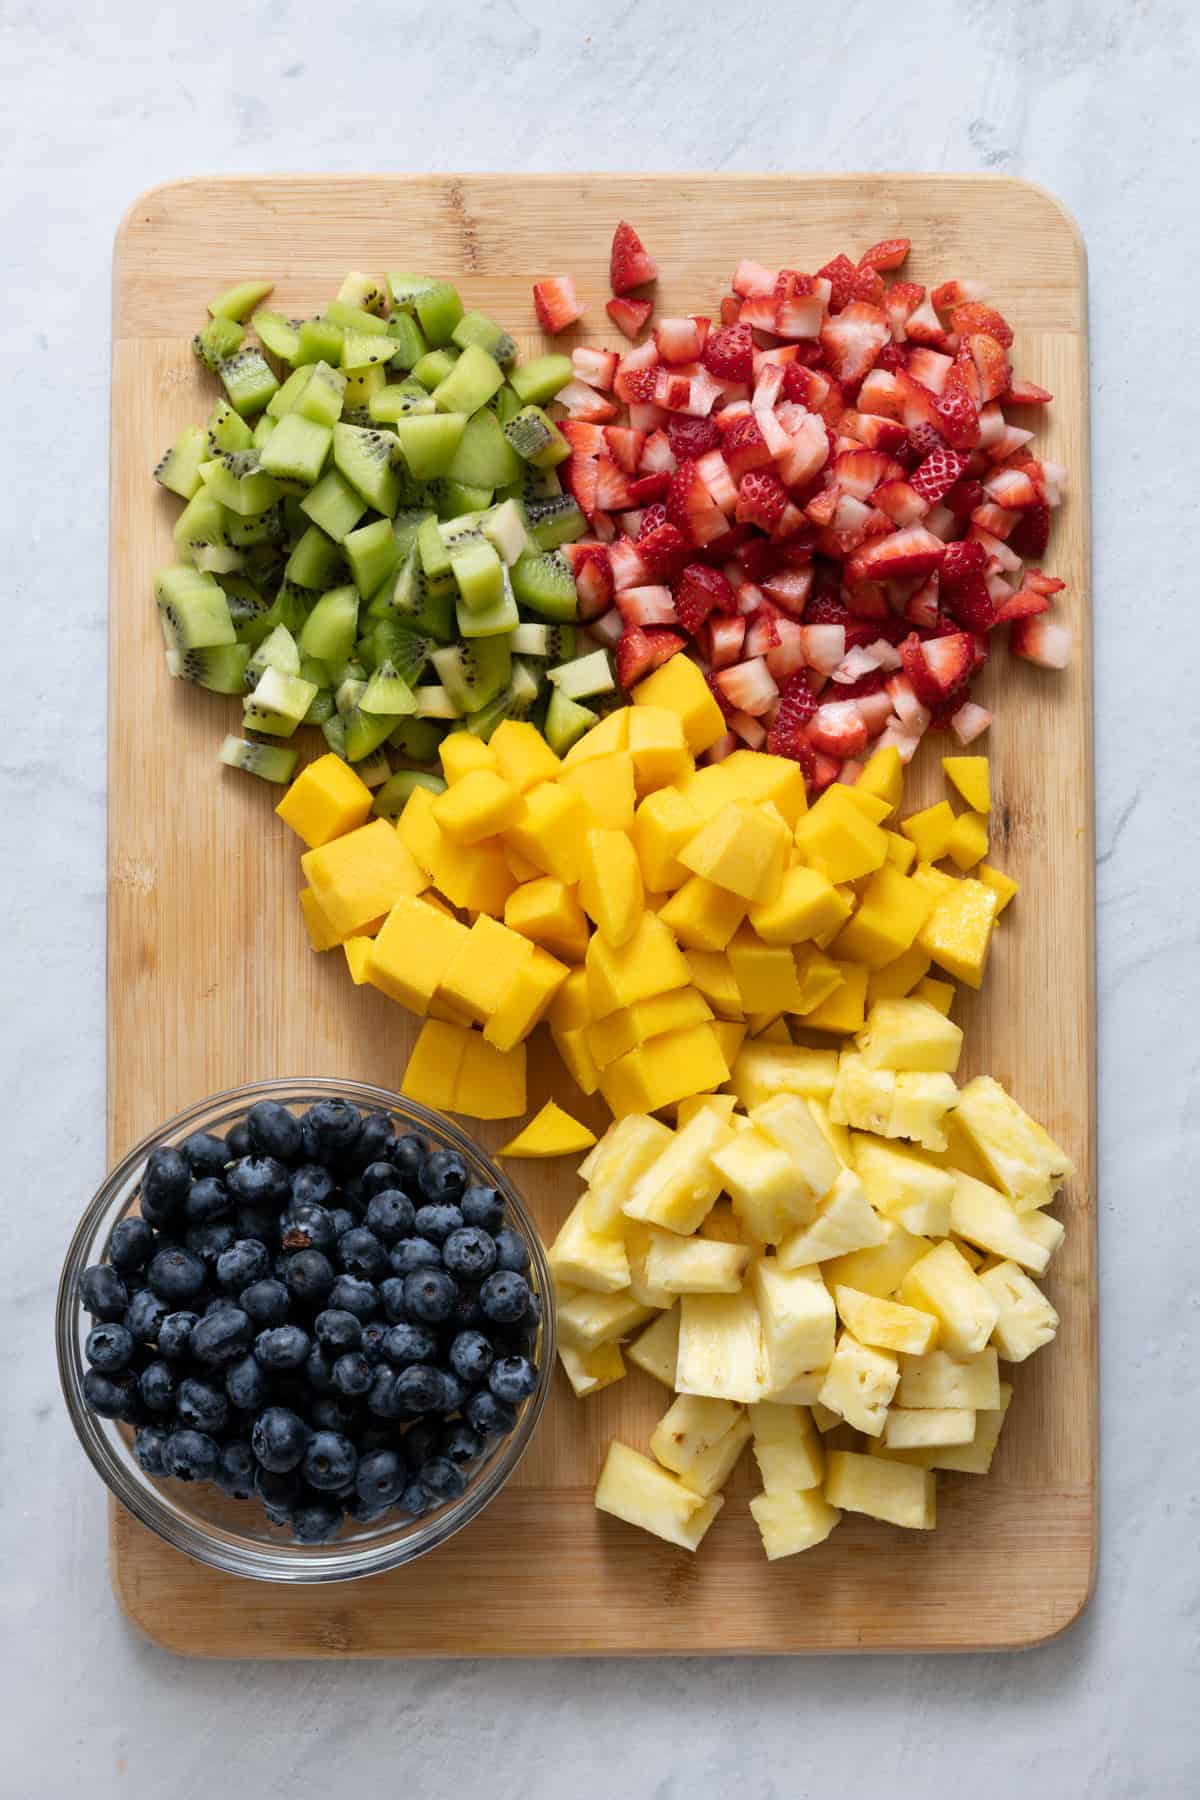 Cutting board with prepared cut fruit for recipe.